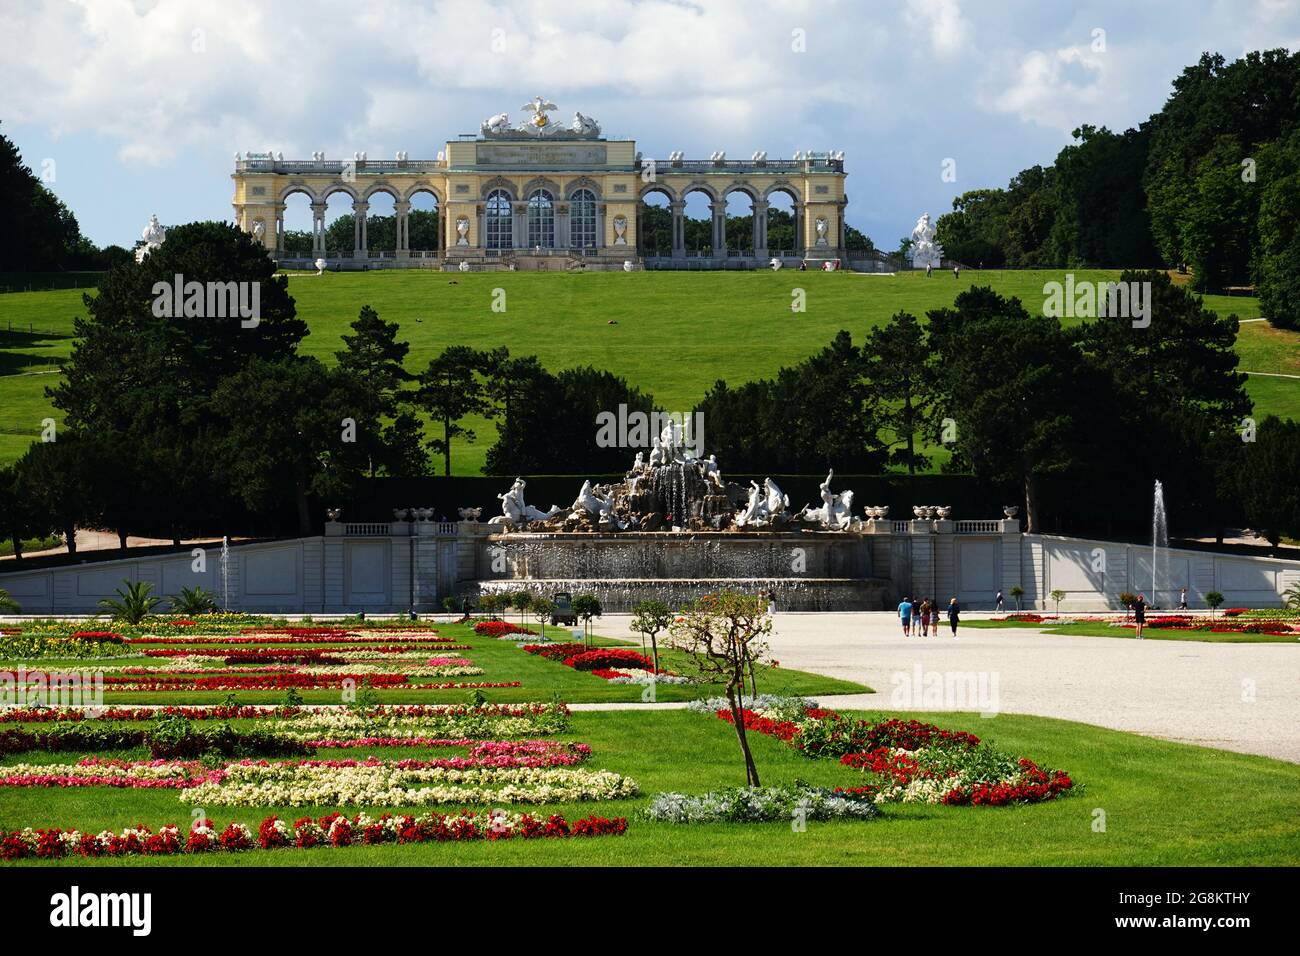 Wien, Österreich - Blick vom Schloss Schönbrunn in Richtung Neptunbrunnen und Gloriette über herrliche Blumen und Parkanlagen Stock Photo